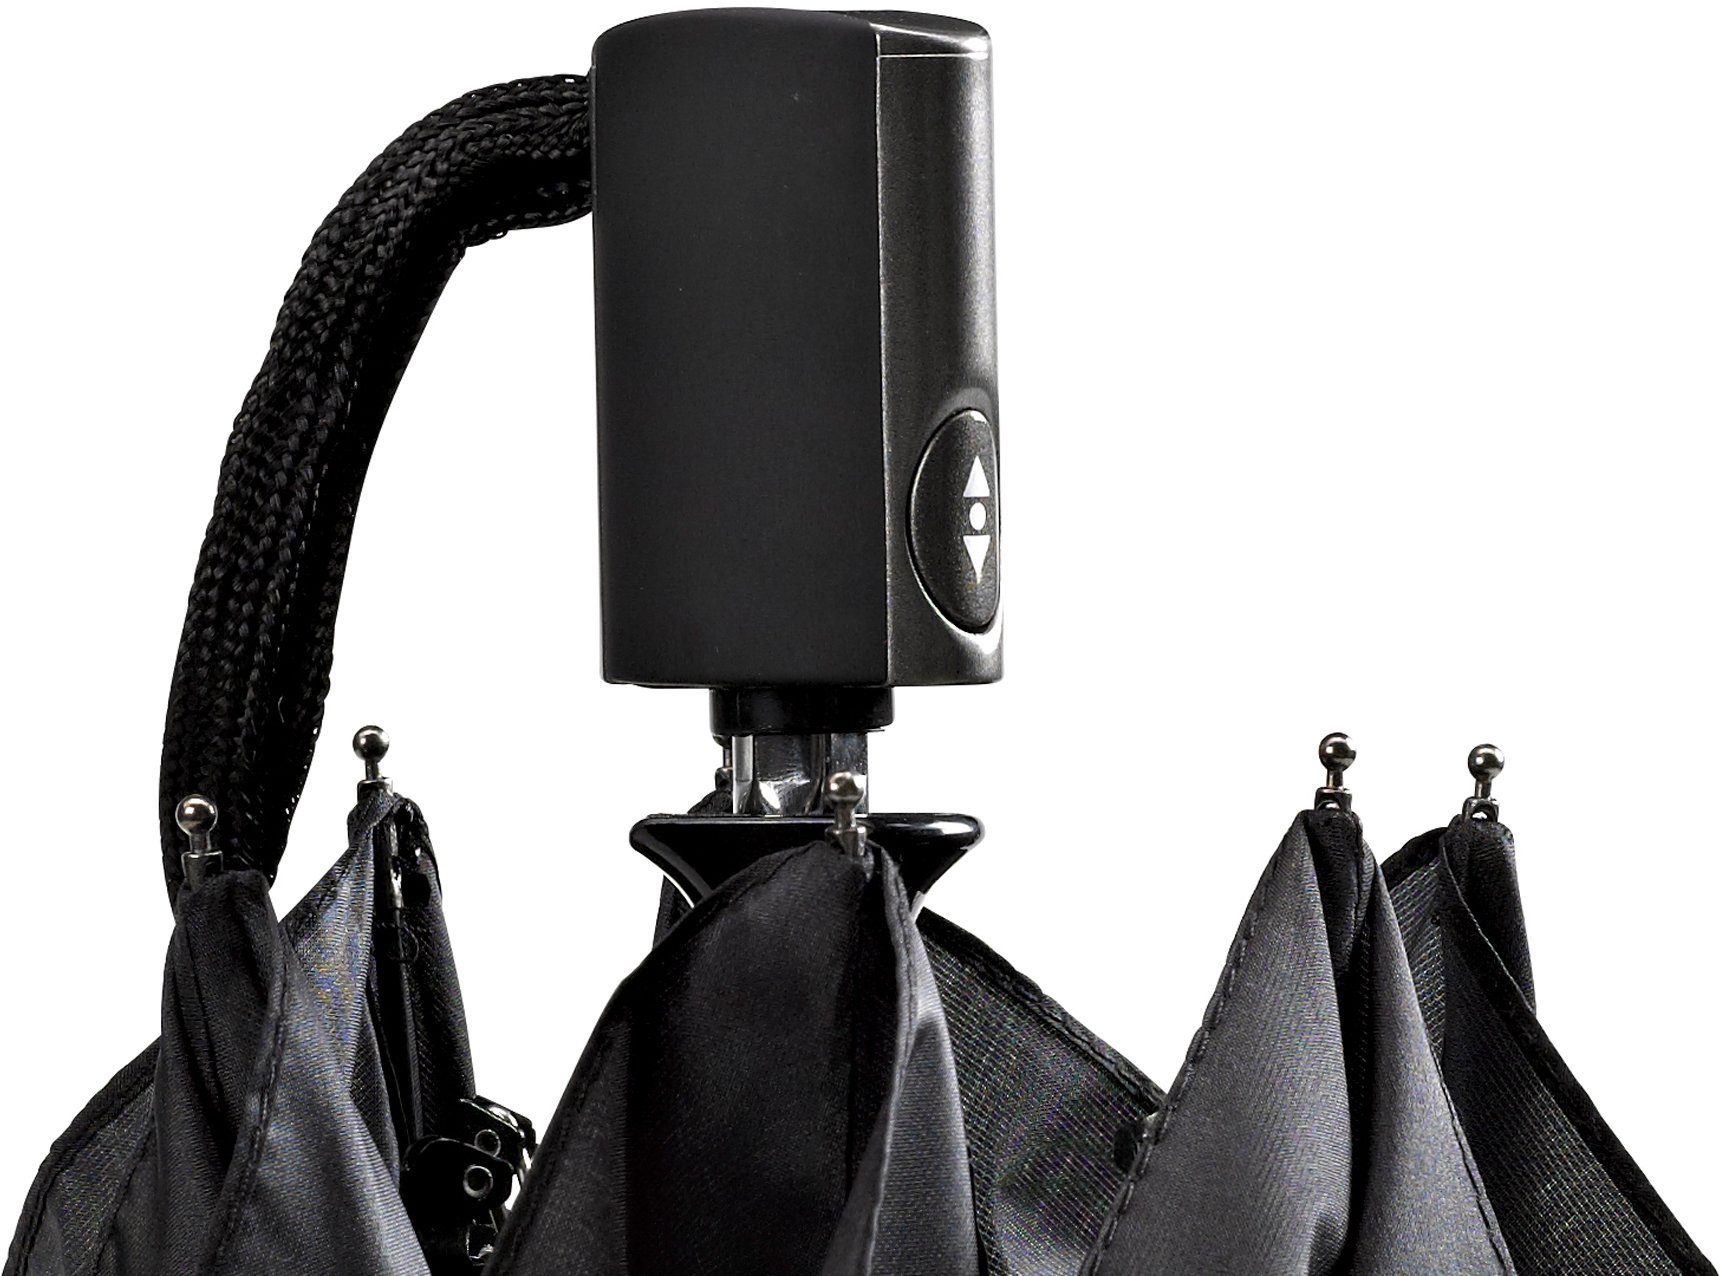 EuroSCHIRM® Taschenregenschirm flach Automatik leicht 3224, und extra schwarz